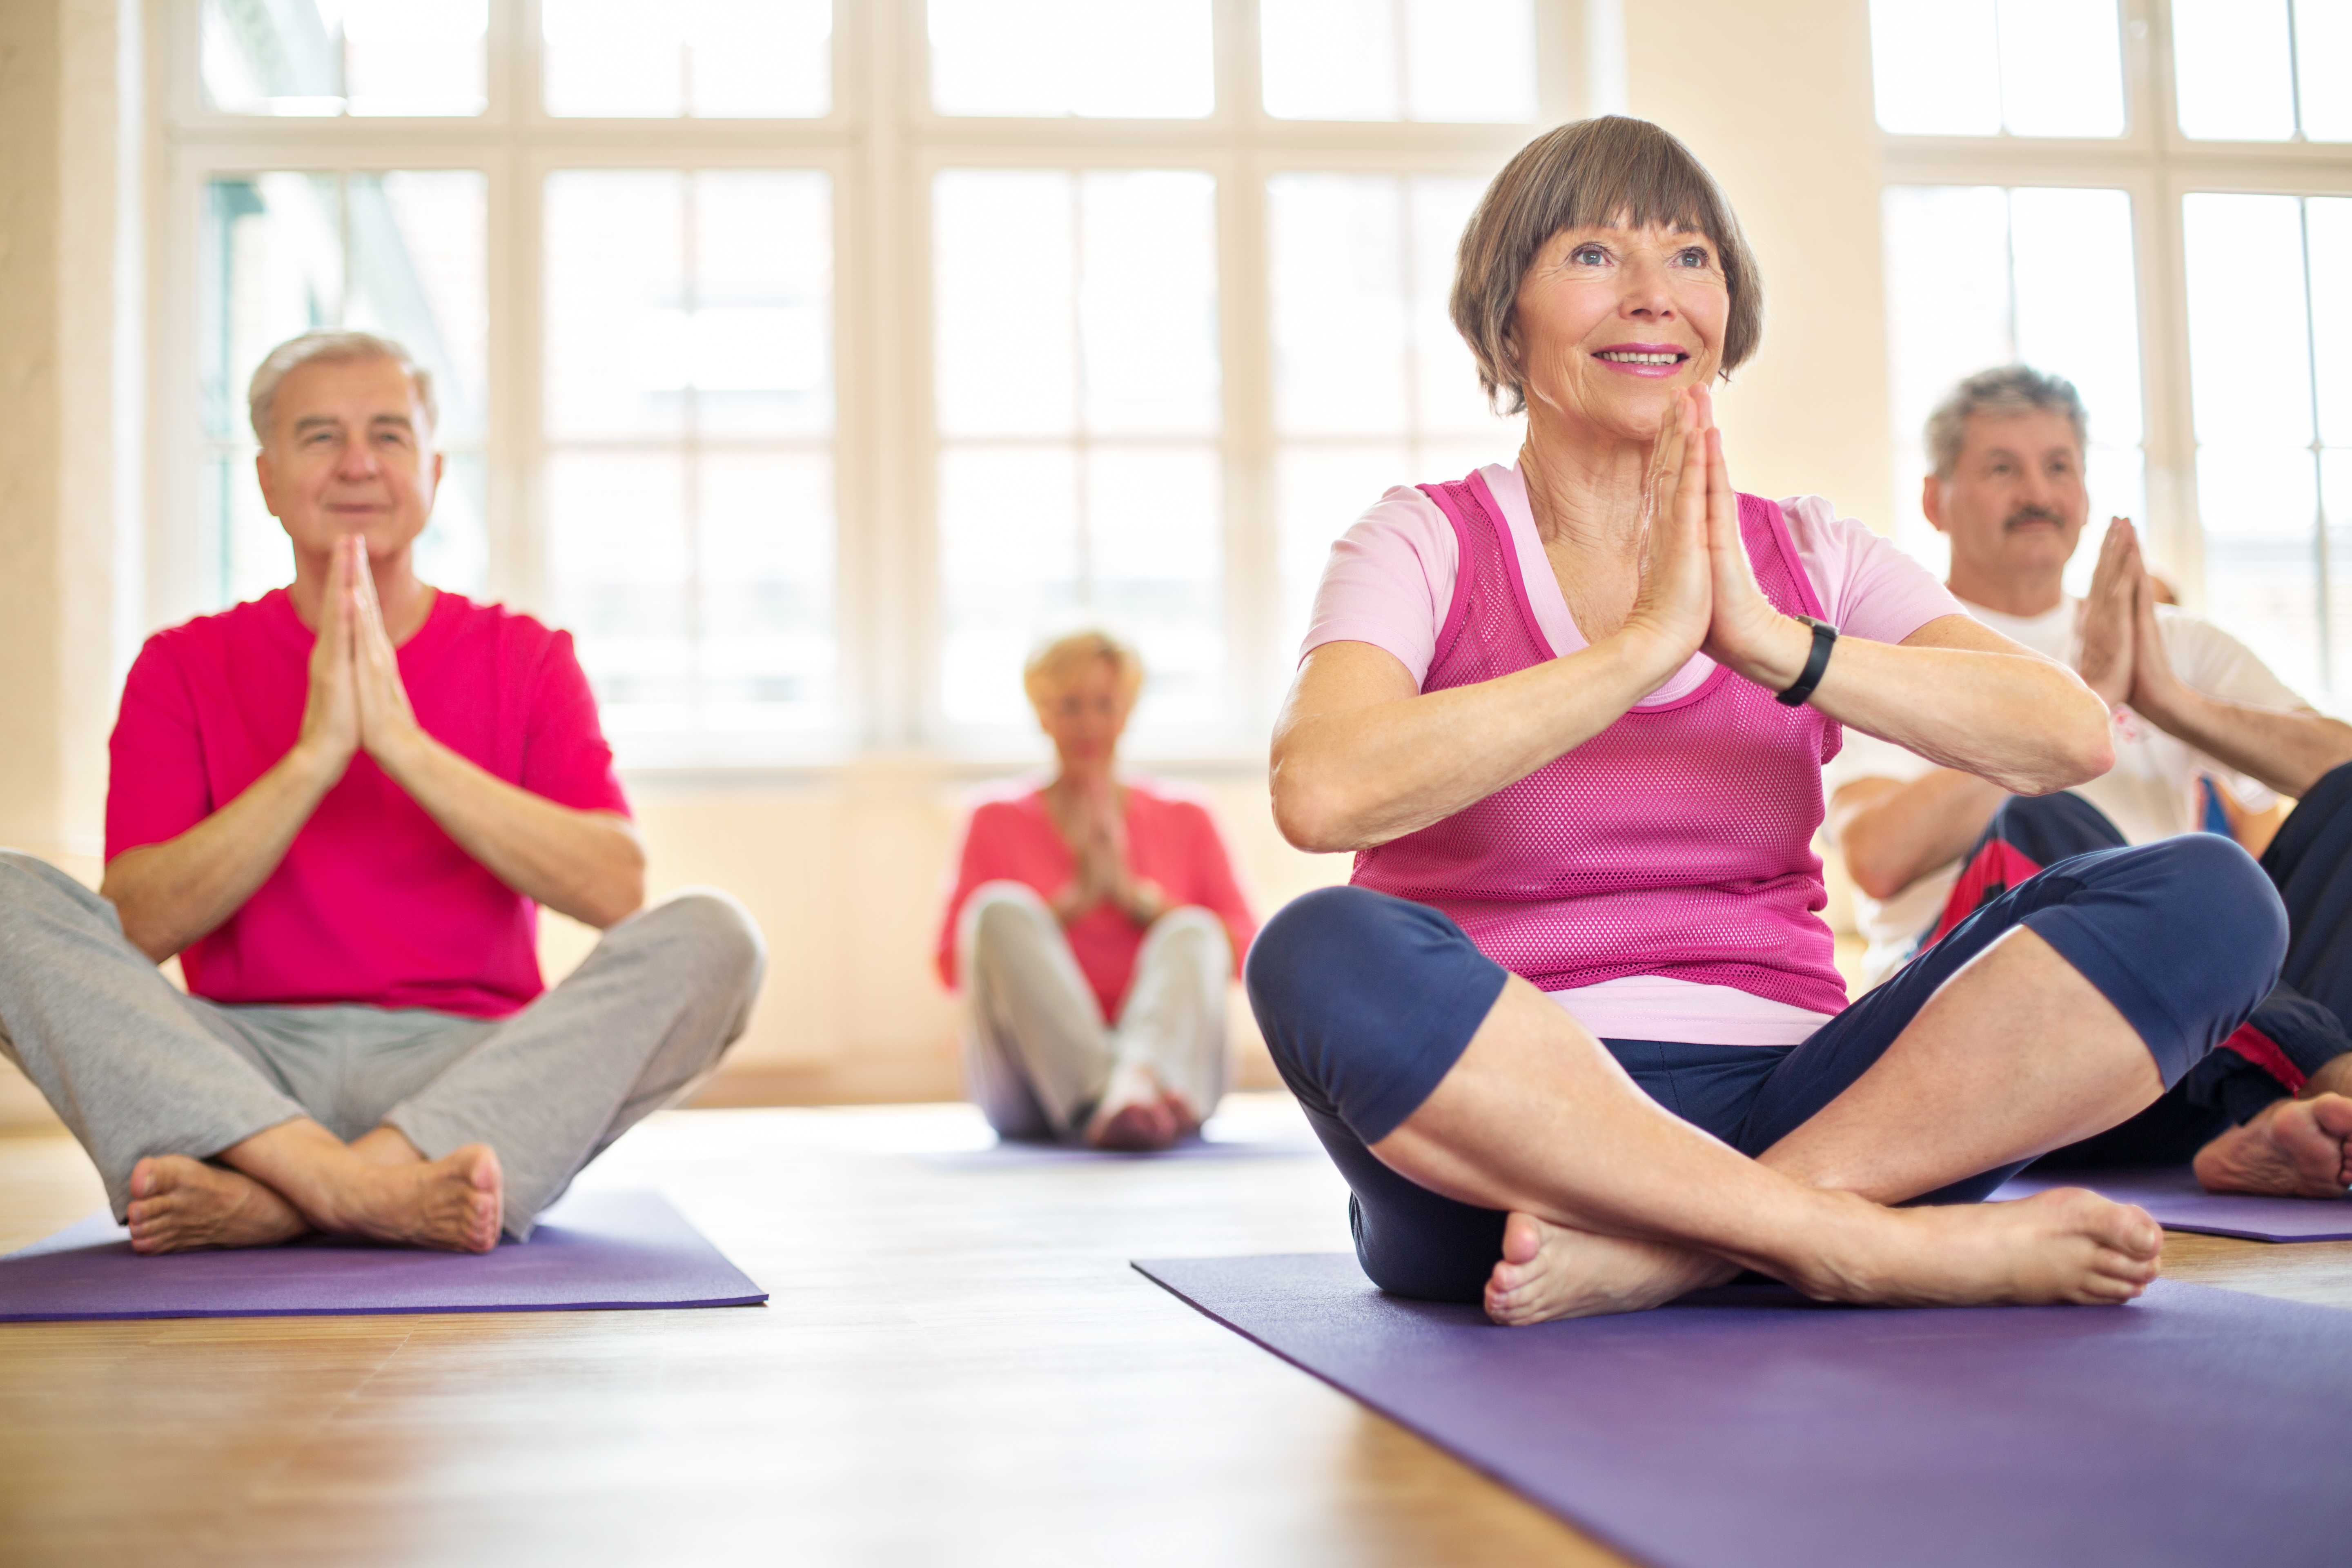 Упражнения в пожилом возрасте. Физкультура для пожилых. Йога для пожилых. Физкультура для пенсионеров. ЛФК для пожилых упражнения.